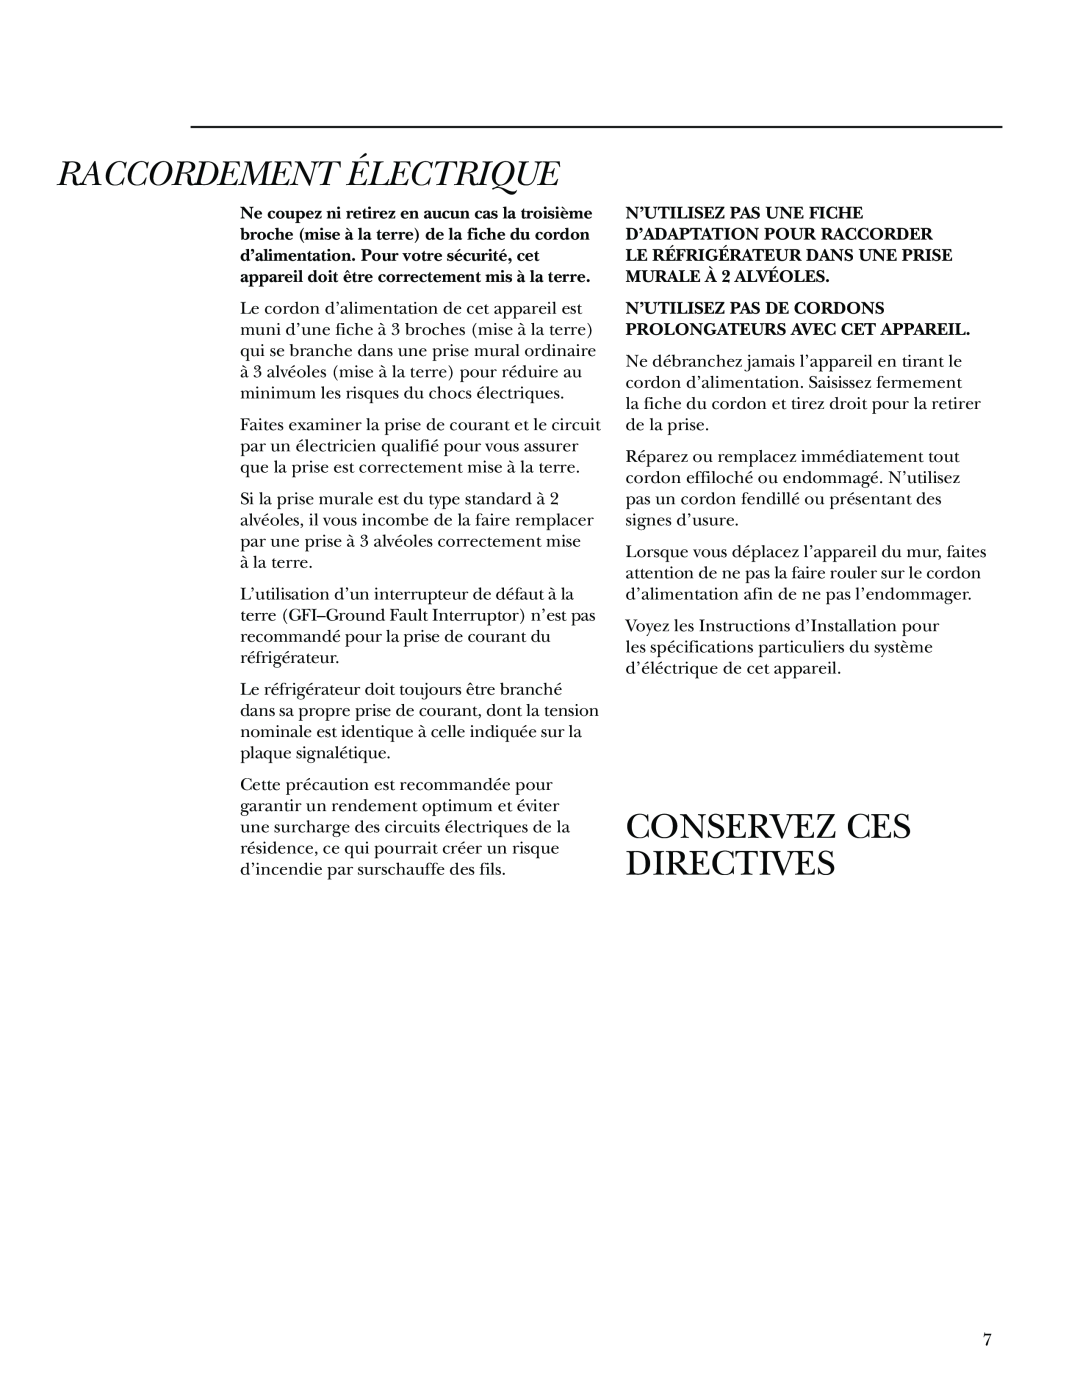 GE Monogram Bottom-Freezer Built-In Refrigerators owner manual Raccordement Électrique, Conservez Ces Directives 